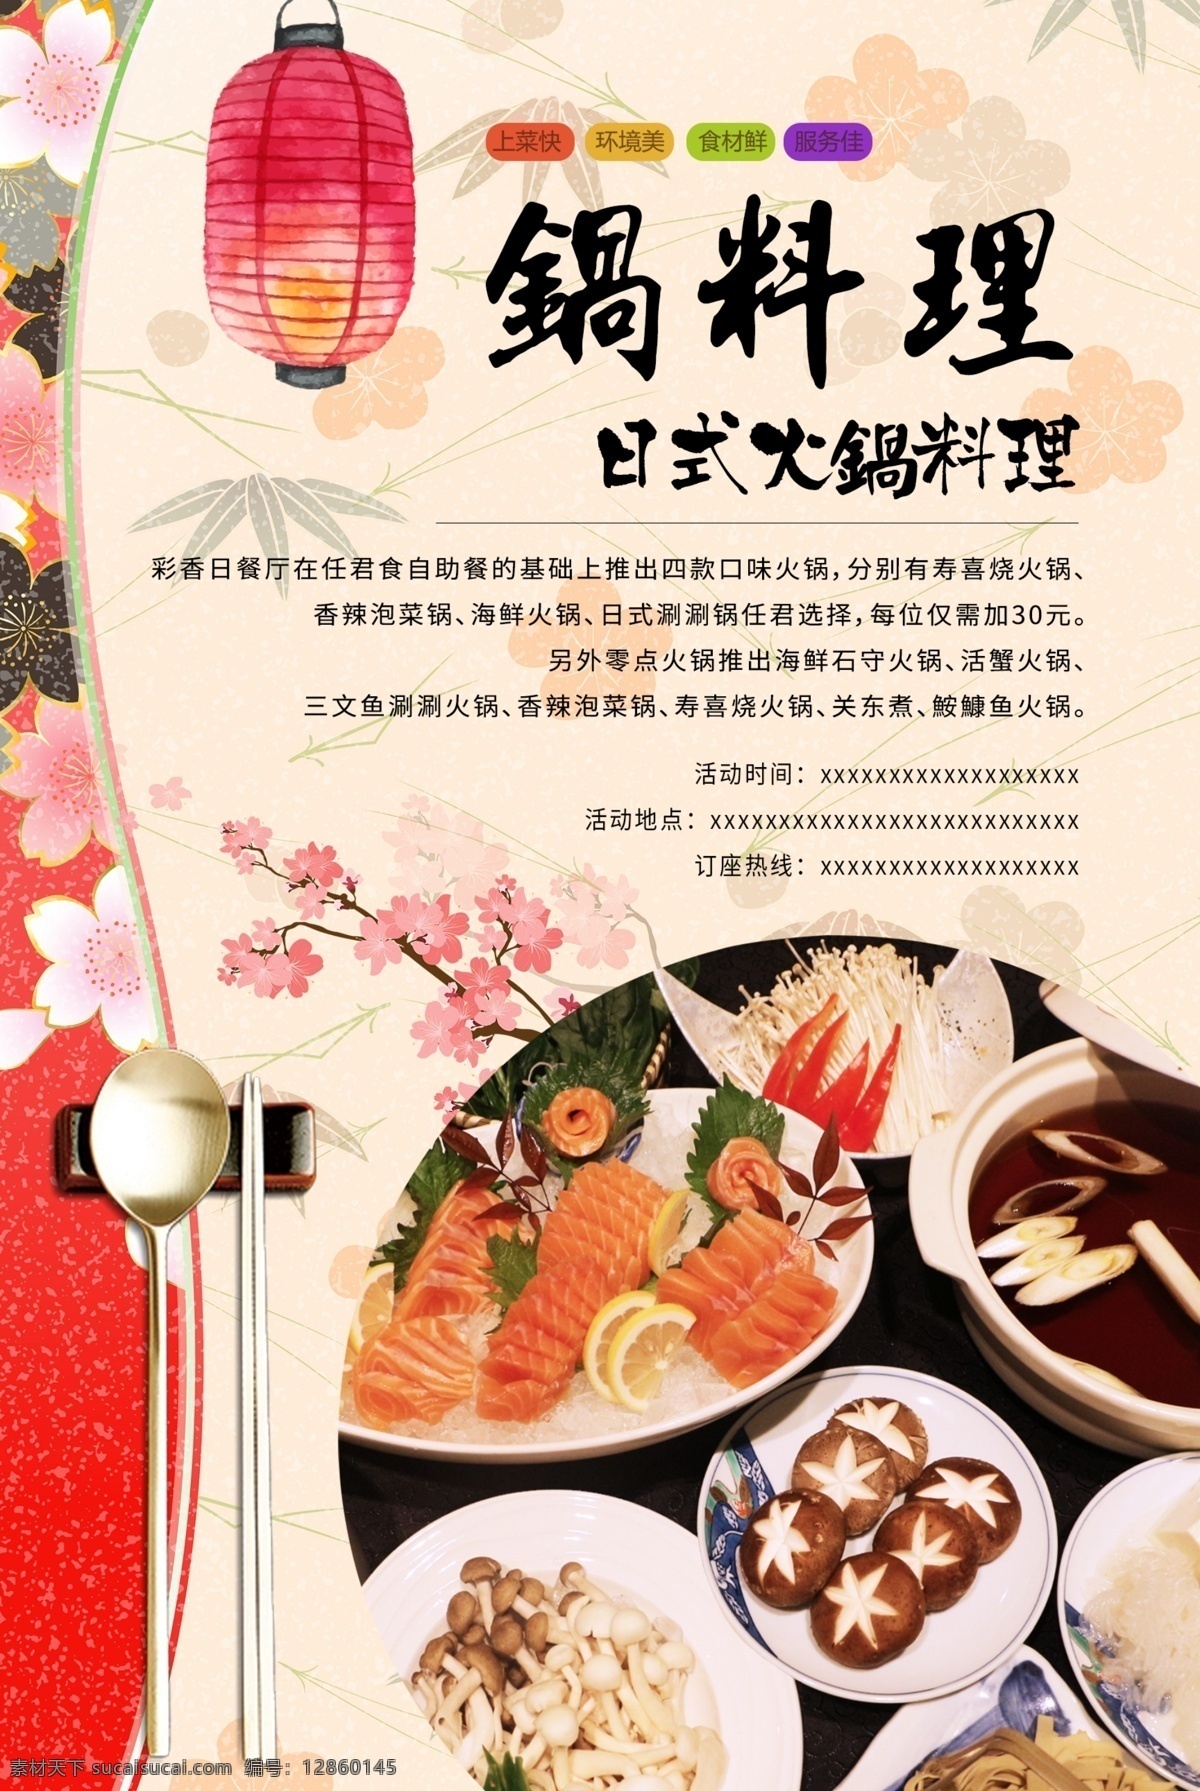 创意 日式 火锅 料理 美食 海报 餐饮海报 日式海报 日式餐饮海报 日式餐饮 美食海报